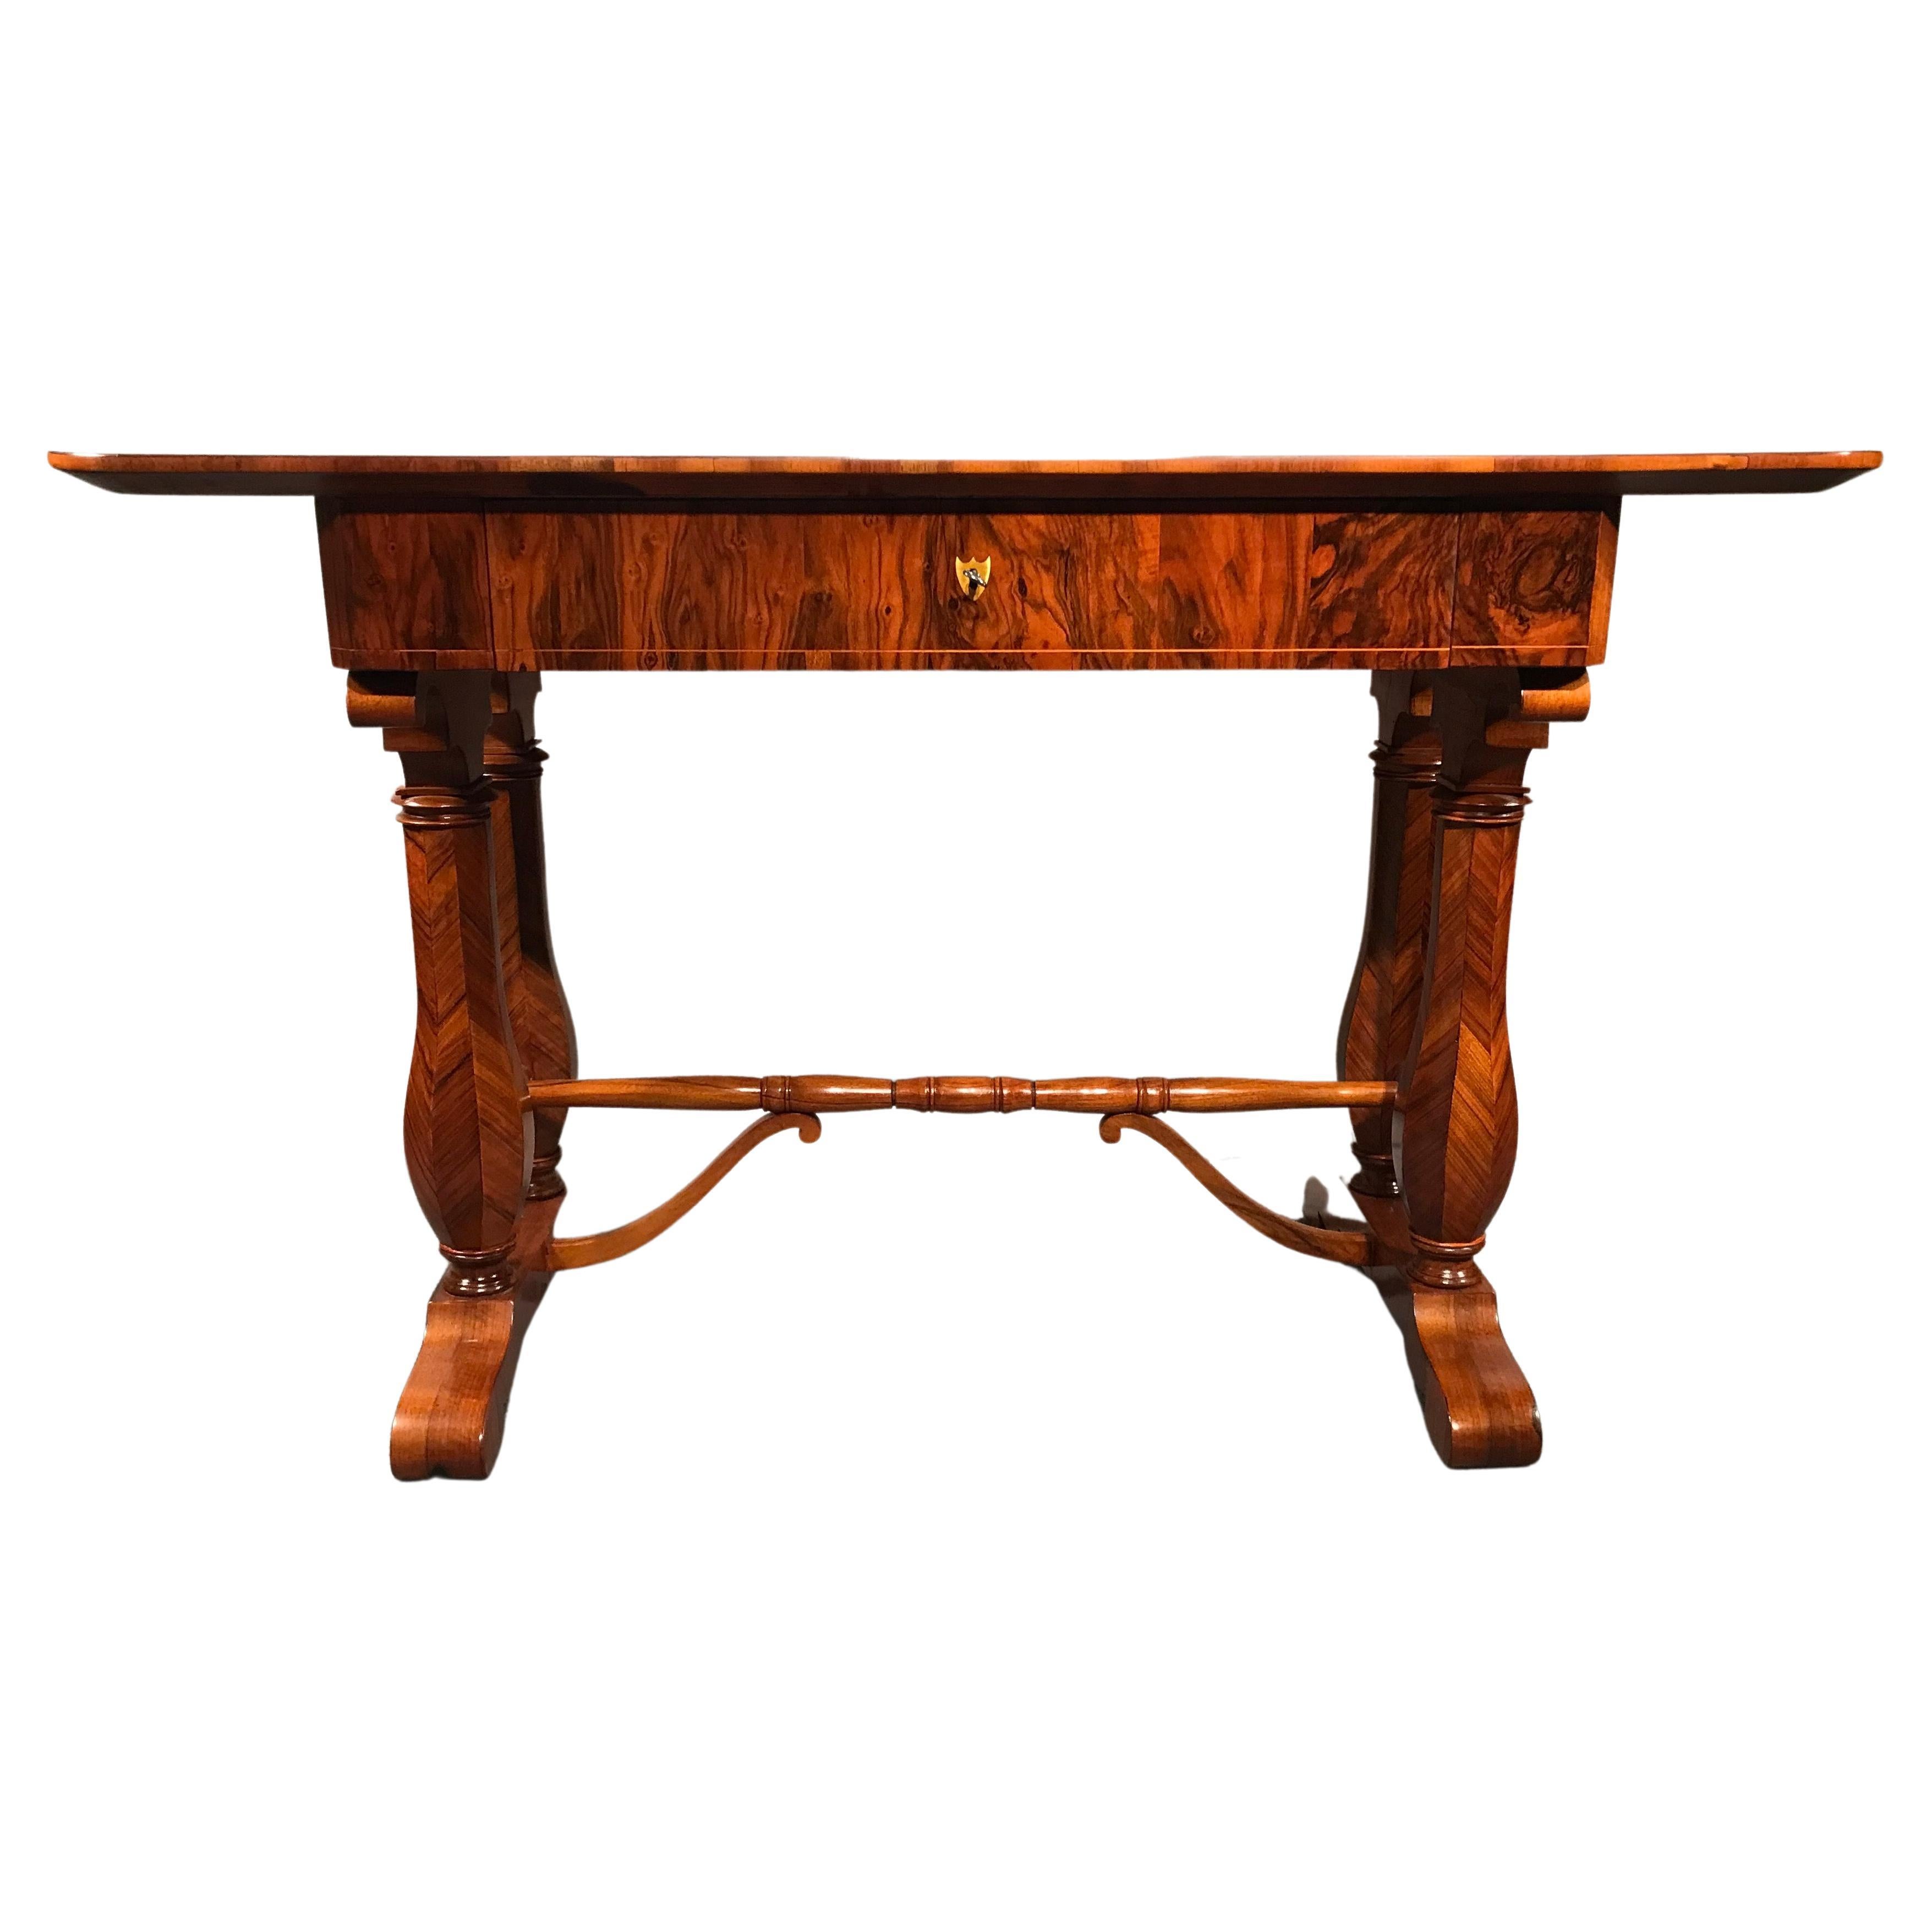 Schöner Schreibtisch, Wien 1810-20, im Stil von Josef Danhauser, Nussbaumfurnier. Die sechseckigen Beine haben ein wunderschönes Fischgrätenfurnier. Die Platte zeichnet sich durch die Maserung des Wurzelfurniers aus.  
Der Schreibtisch wird mit